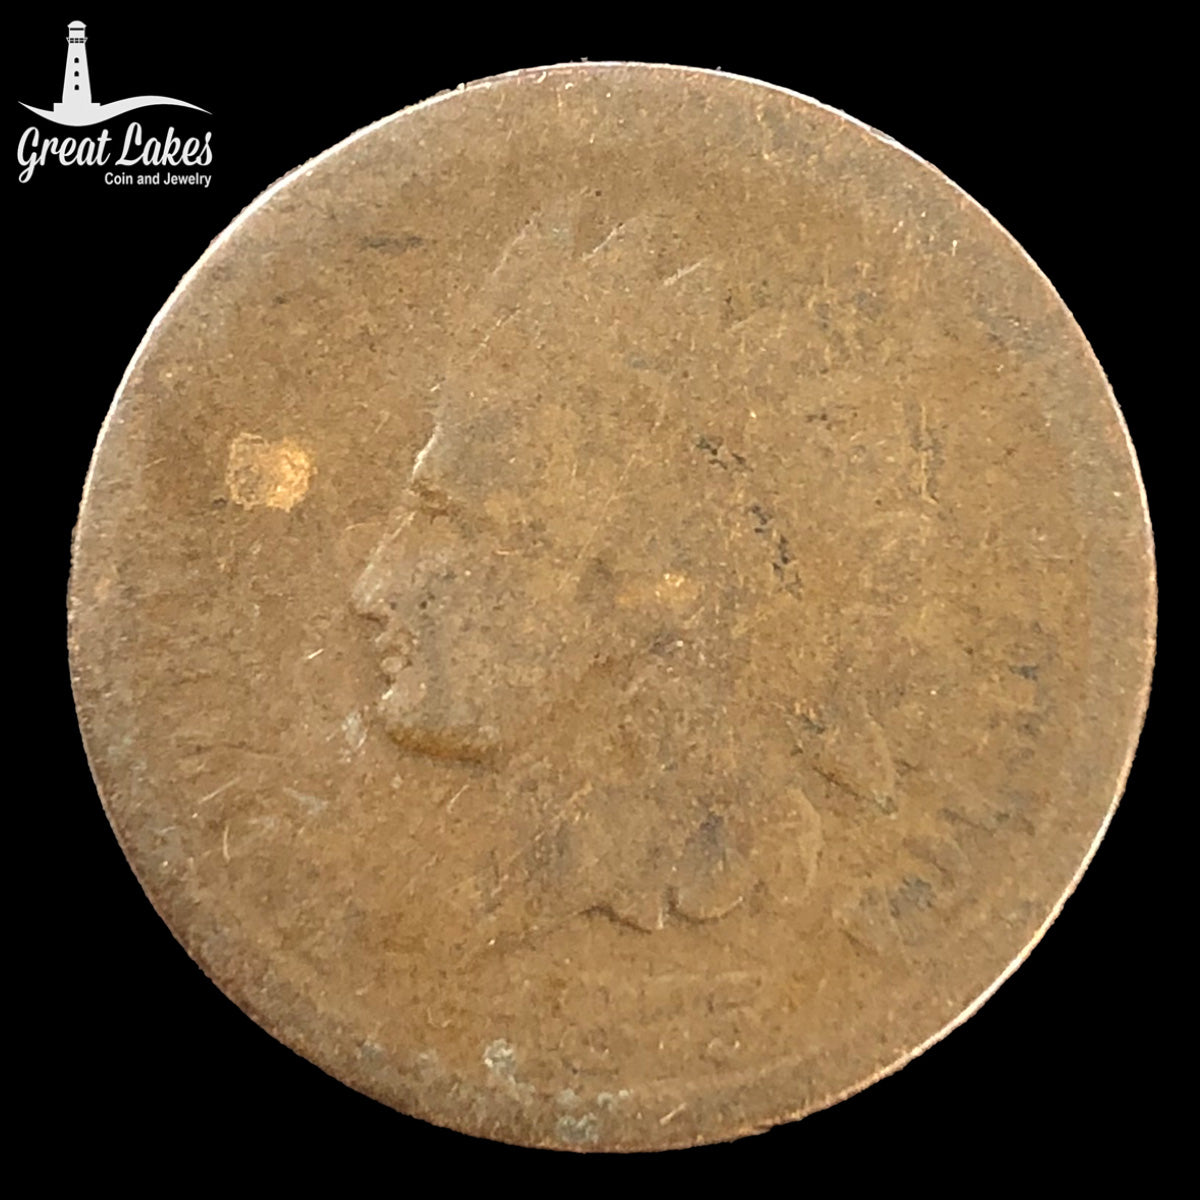 1875 Indian Head Cent (AG)